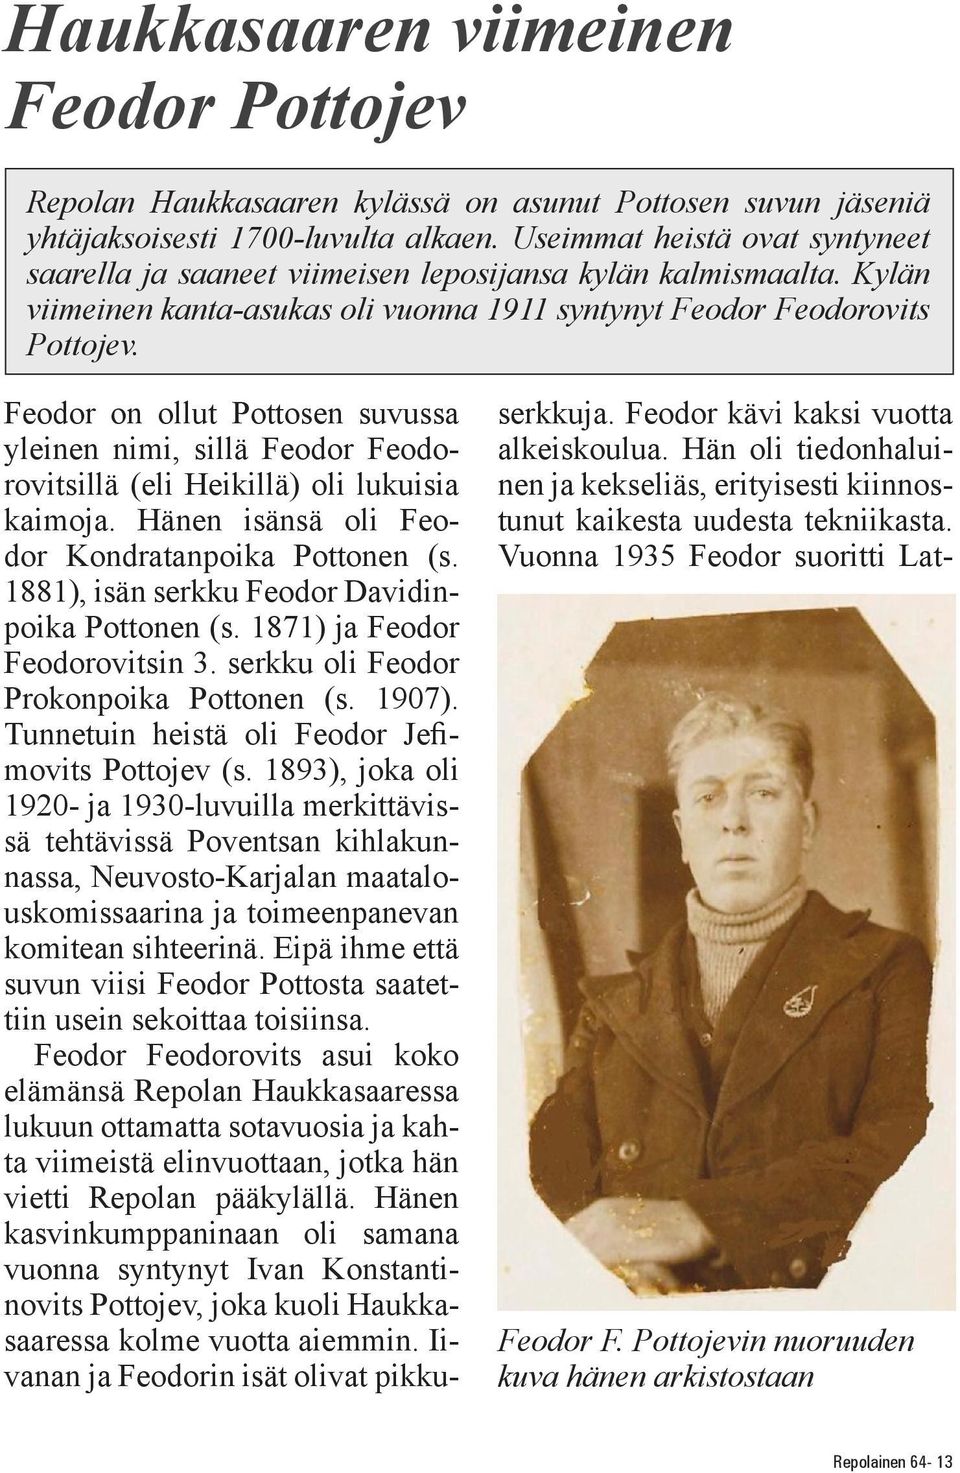 Feodor on ollut Pottosen suvussa yleinen nimi, sillä Feodor Feodorovitsillä (eli Heikillä) oli lukuisia kaimoja. Hänen isänsä oli Feodor Kondratanpoika Pottonen (s.